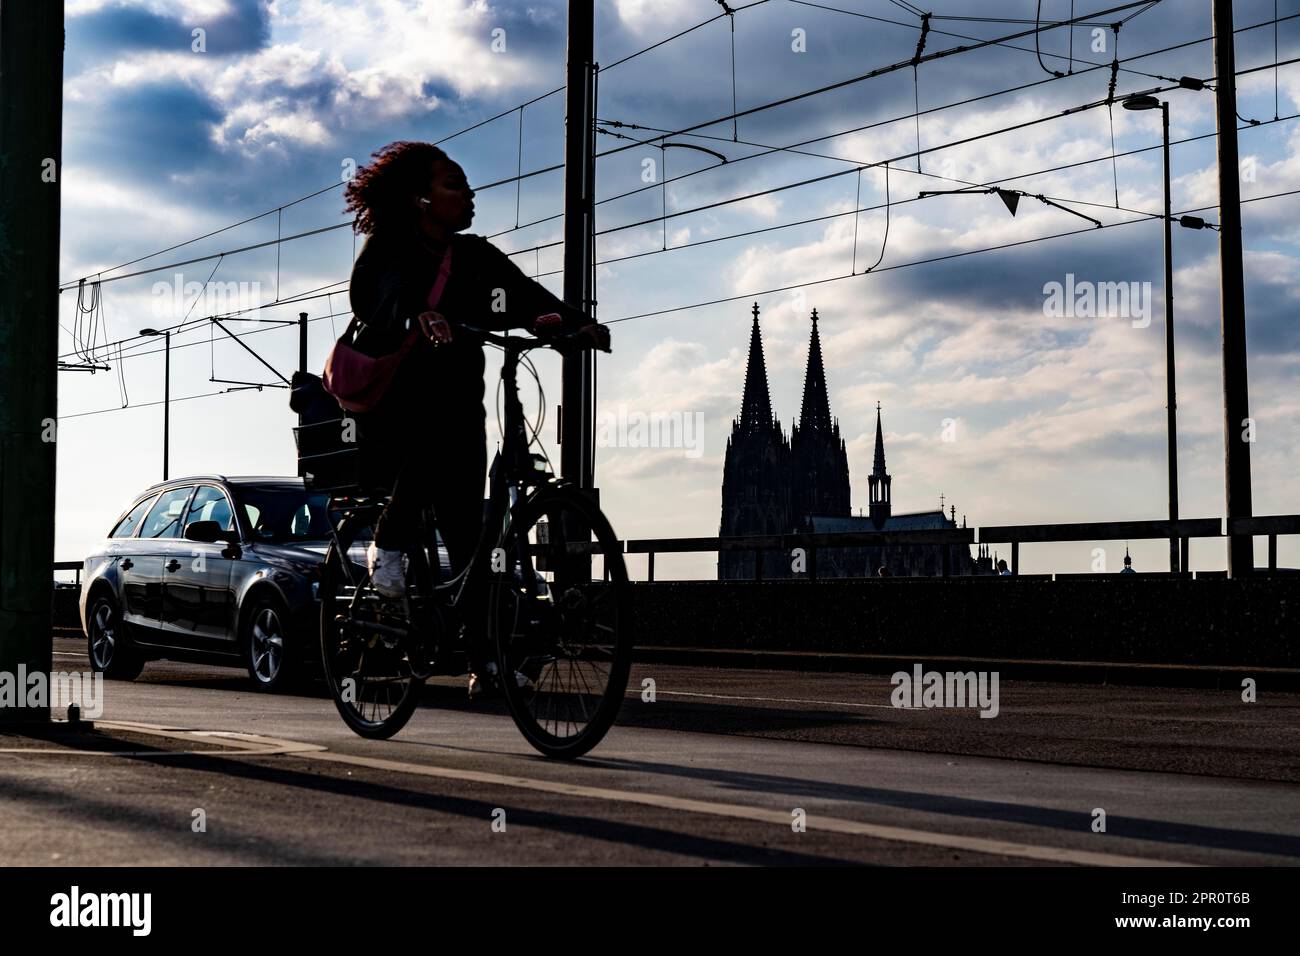 Cyclisme dans la grande ville, cyclistes sur le pont Deutzer à Cologne, cathédrale de Cologne, piste cyclable, NRW, Allemagne Banque D'Images